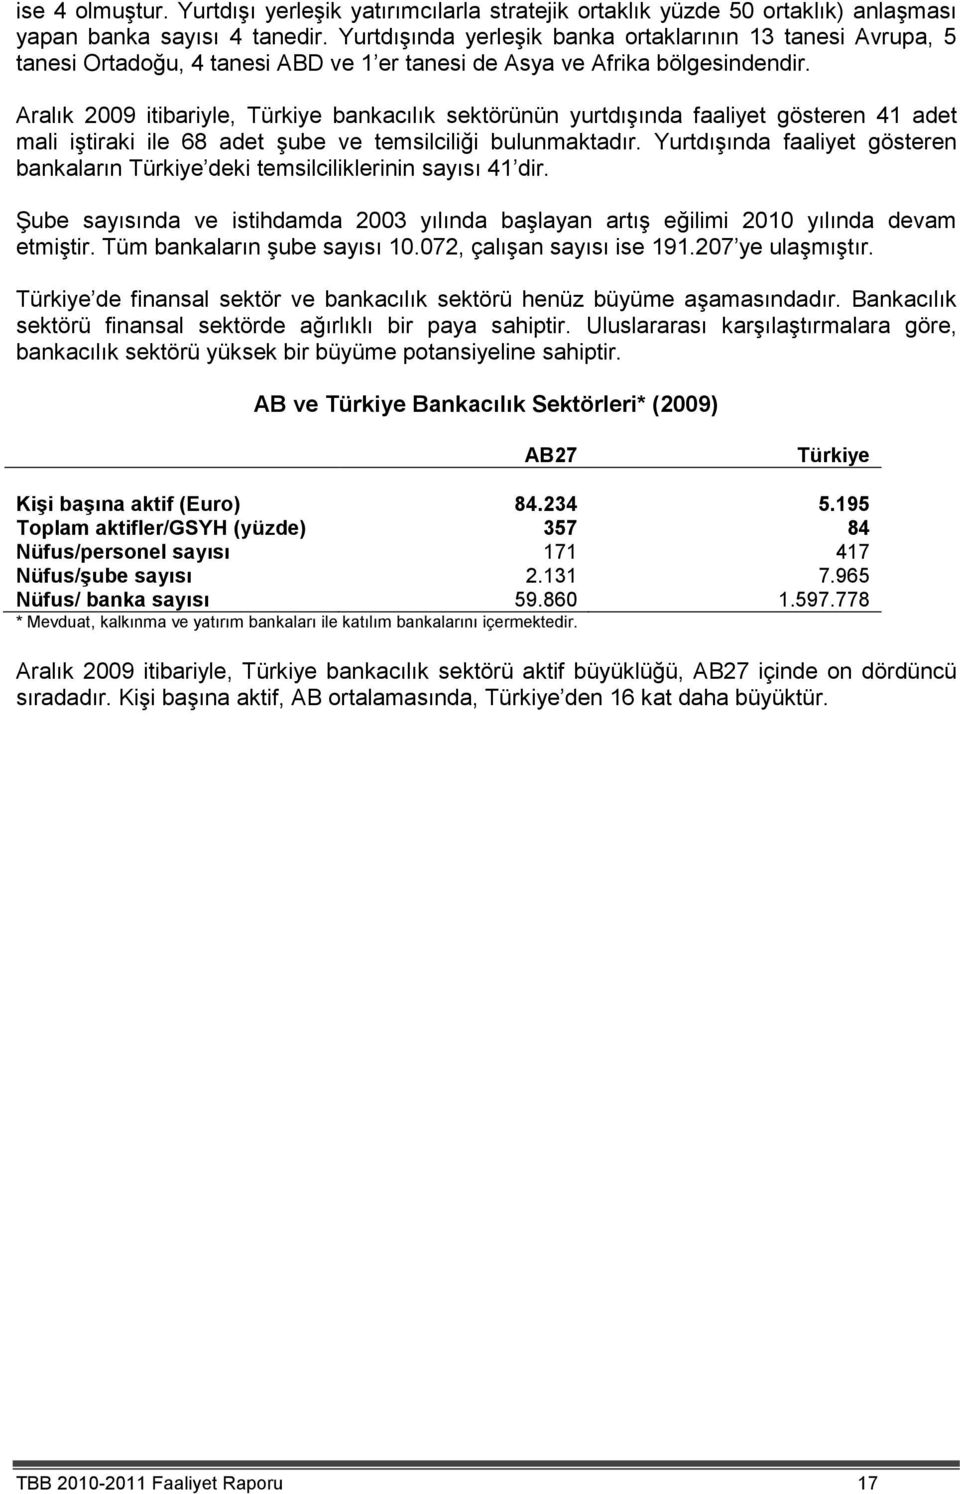 Aralık 2009 itibariyle, Türkiye bankacılık sektörünün yurtdışında faaliyet gösteren 41 adet mali iştiraki ile 68 adet şube ve temsilciliği bulunmaktadır.